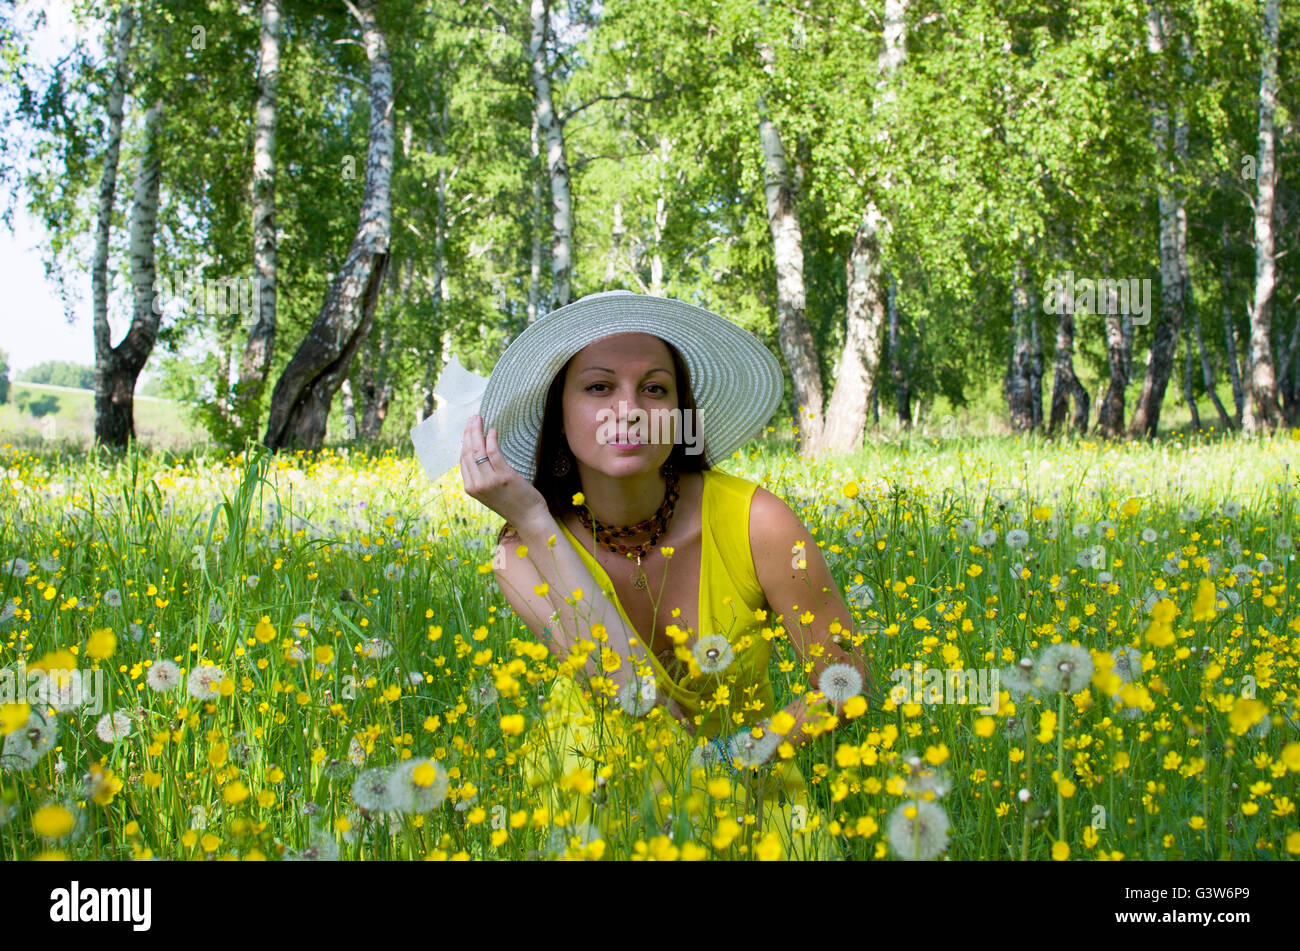 La jeune fille dans un chapeau sur une prairie entre les fleurs jaunes et les pissenlits, la jeune fille, sur un pré, le bois, le jaune, les fleurs, les jeunes Banque D'Images